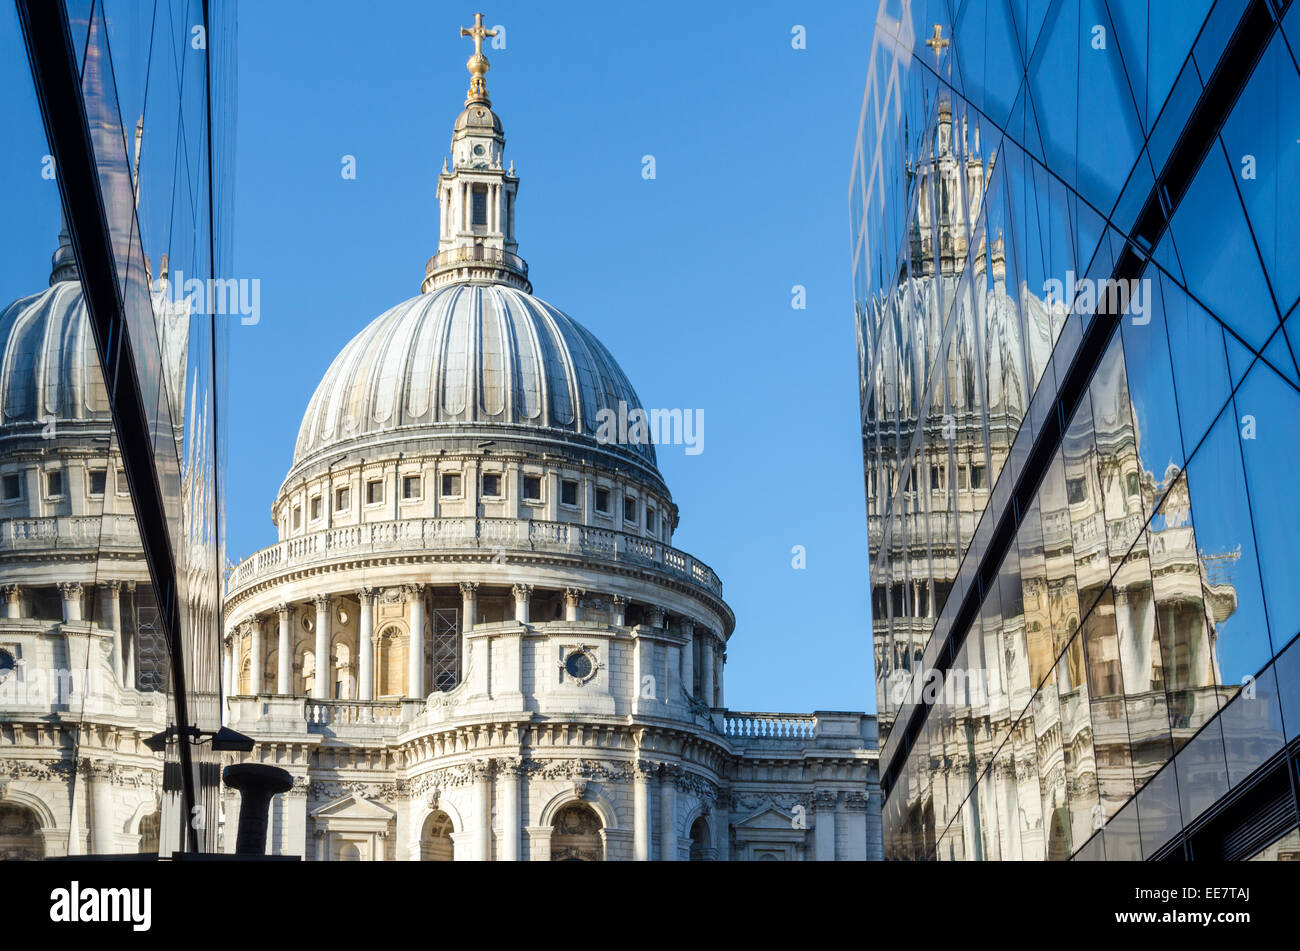 Die St Paul's Kathedrale, spiegelt sich in dem Glas von einem neuen Einkaufszentrum. Stadt von London, Großbritannien Stockfoto